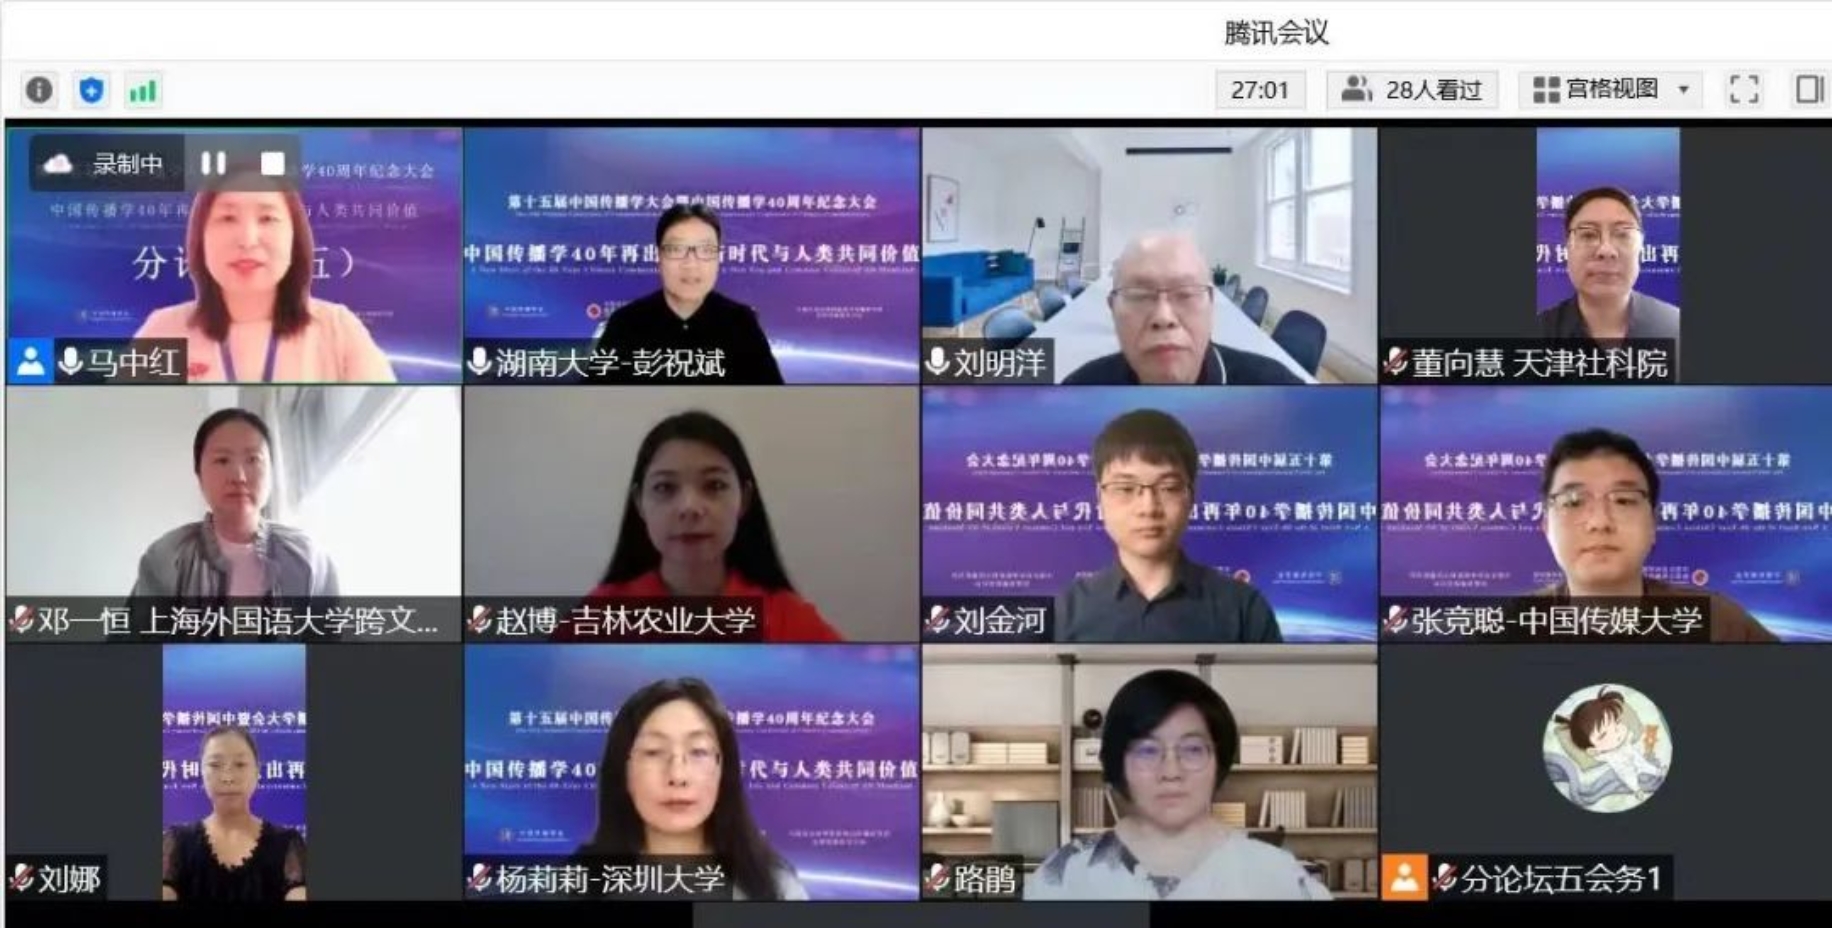 广州南方学院文学与传媒学院教师刘娜、高进与学生陈奎霖参加第十五届中国传播学大会并宣读论文